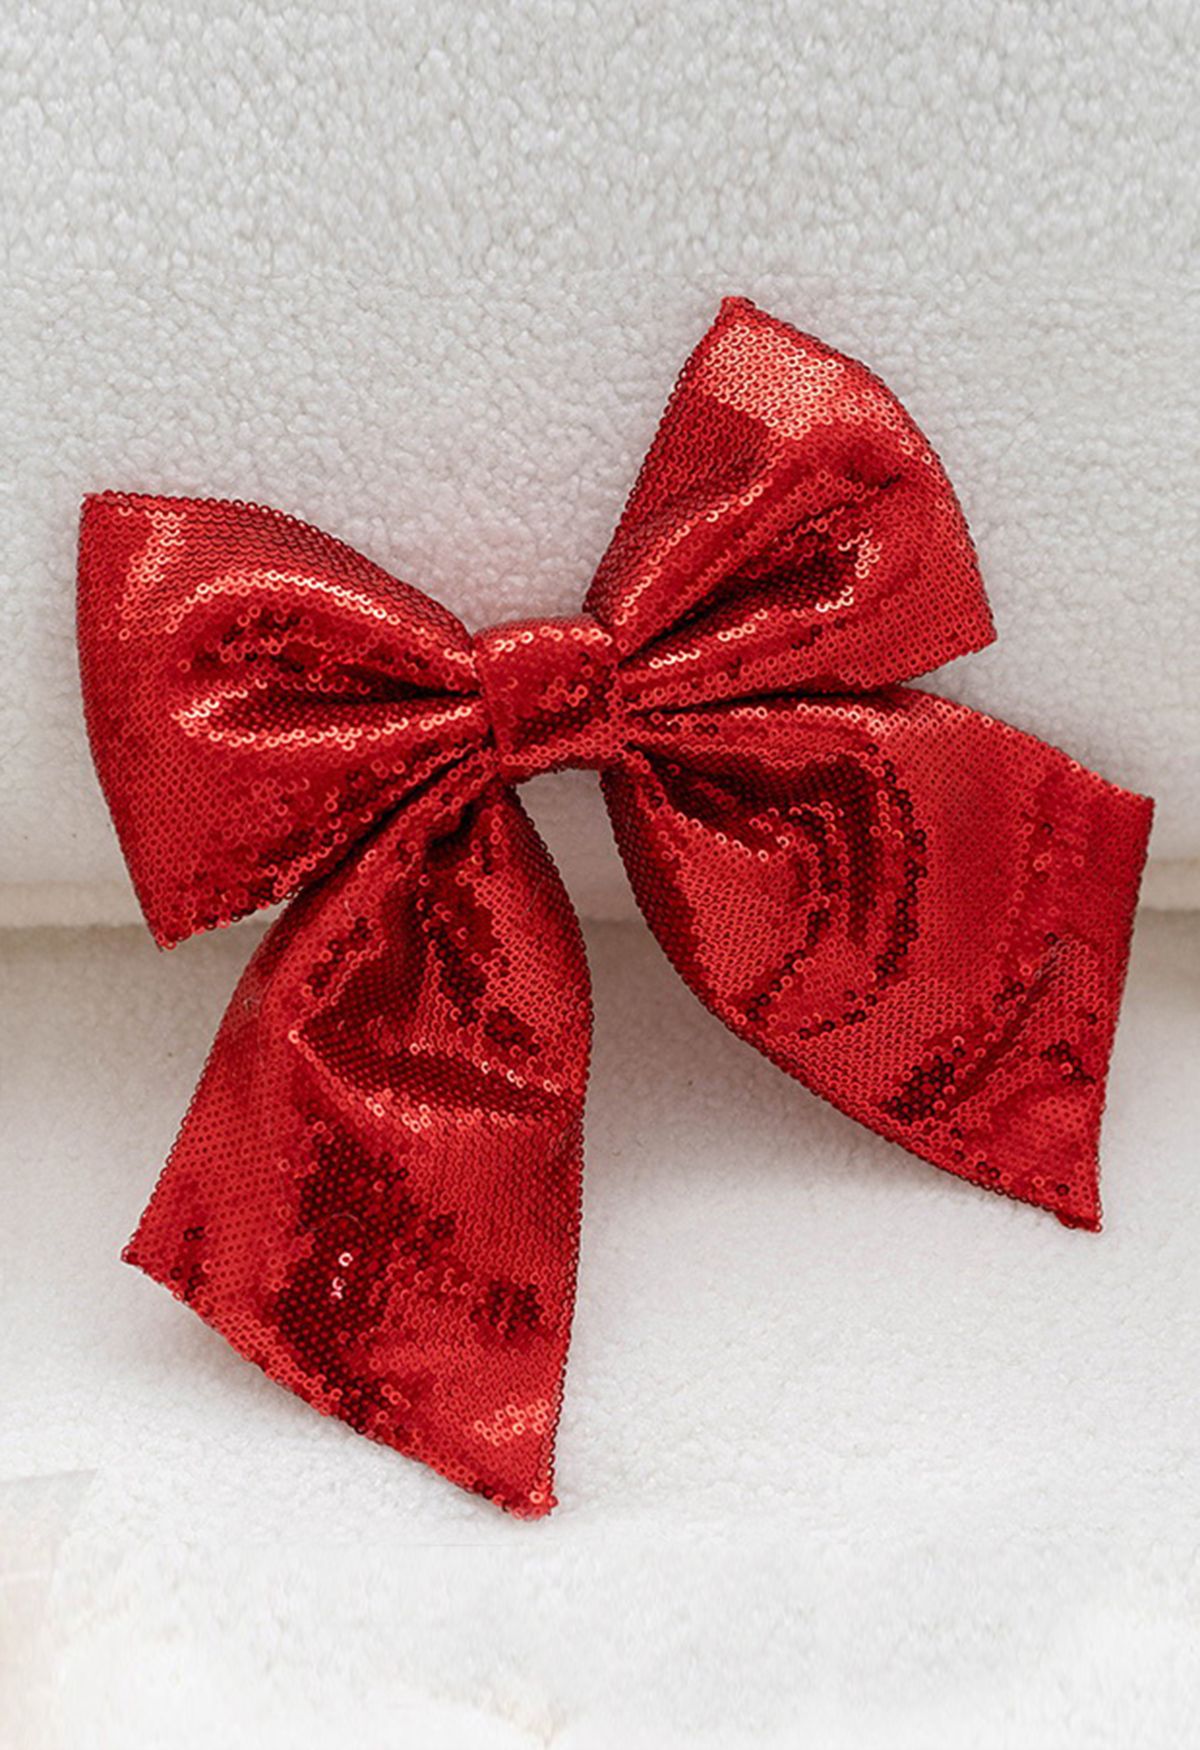 Volle Pailletten-Bowknot-Weihnachtsverzierung im Rot